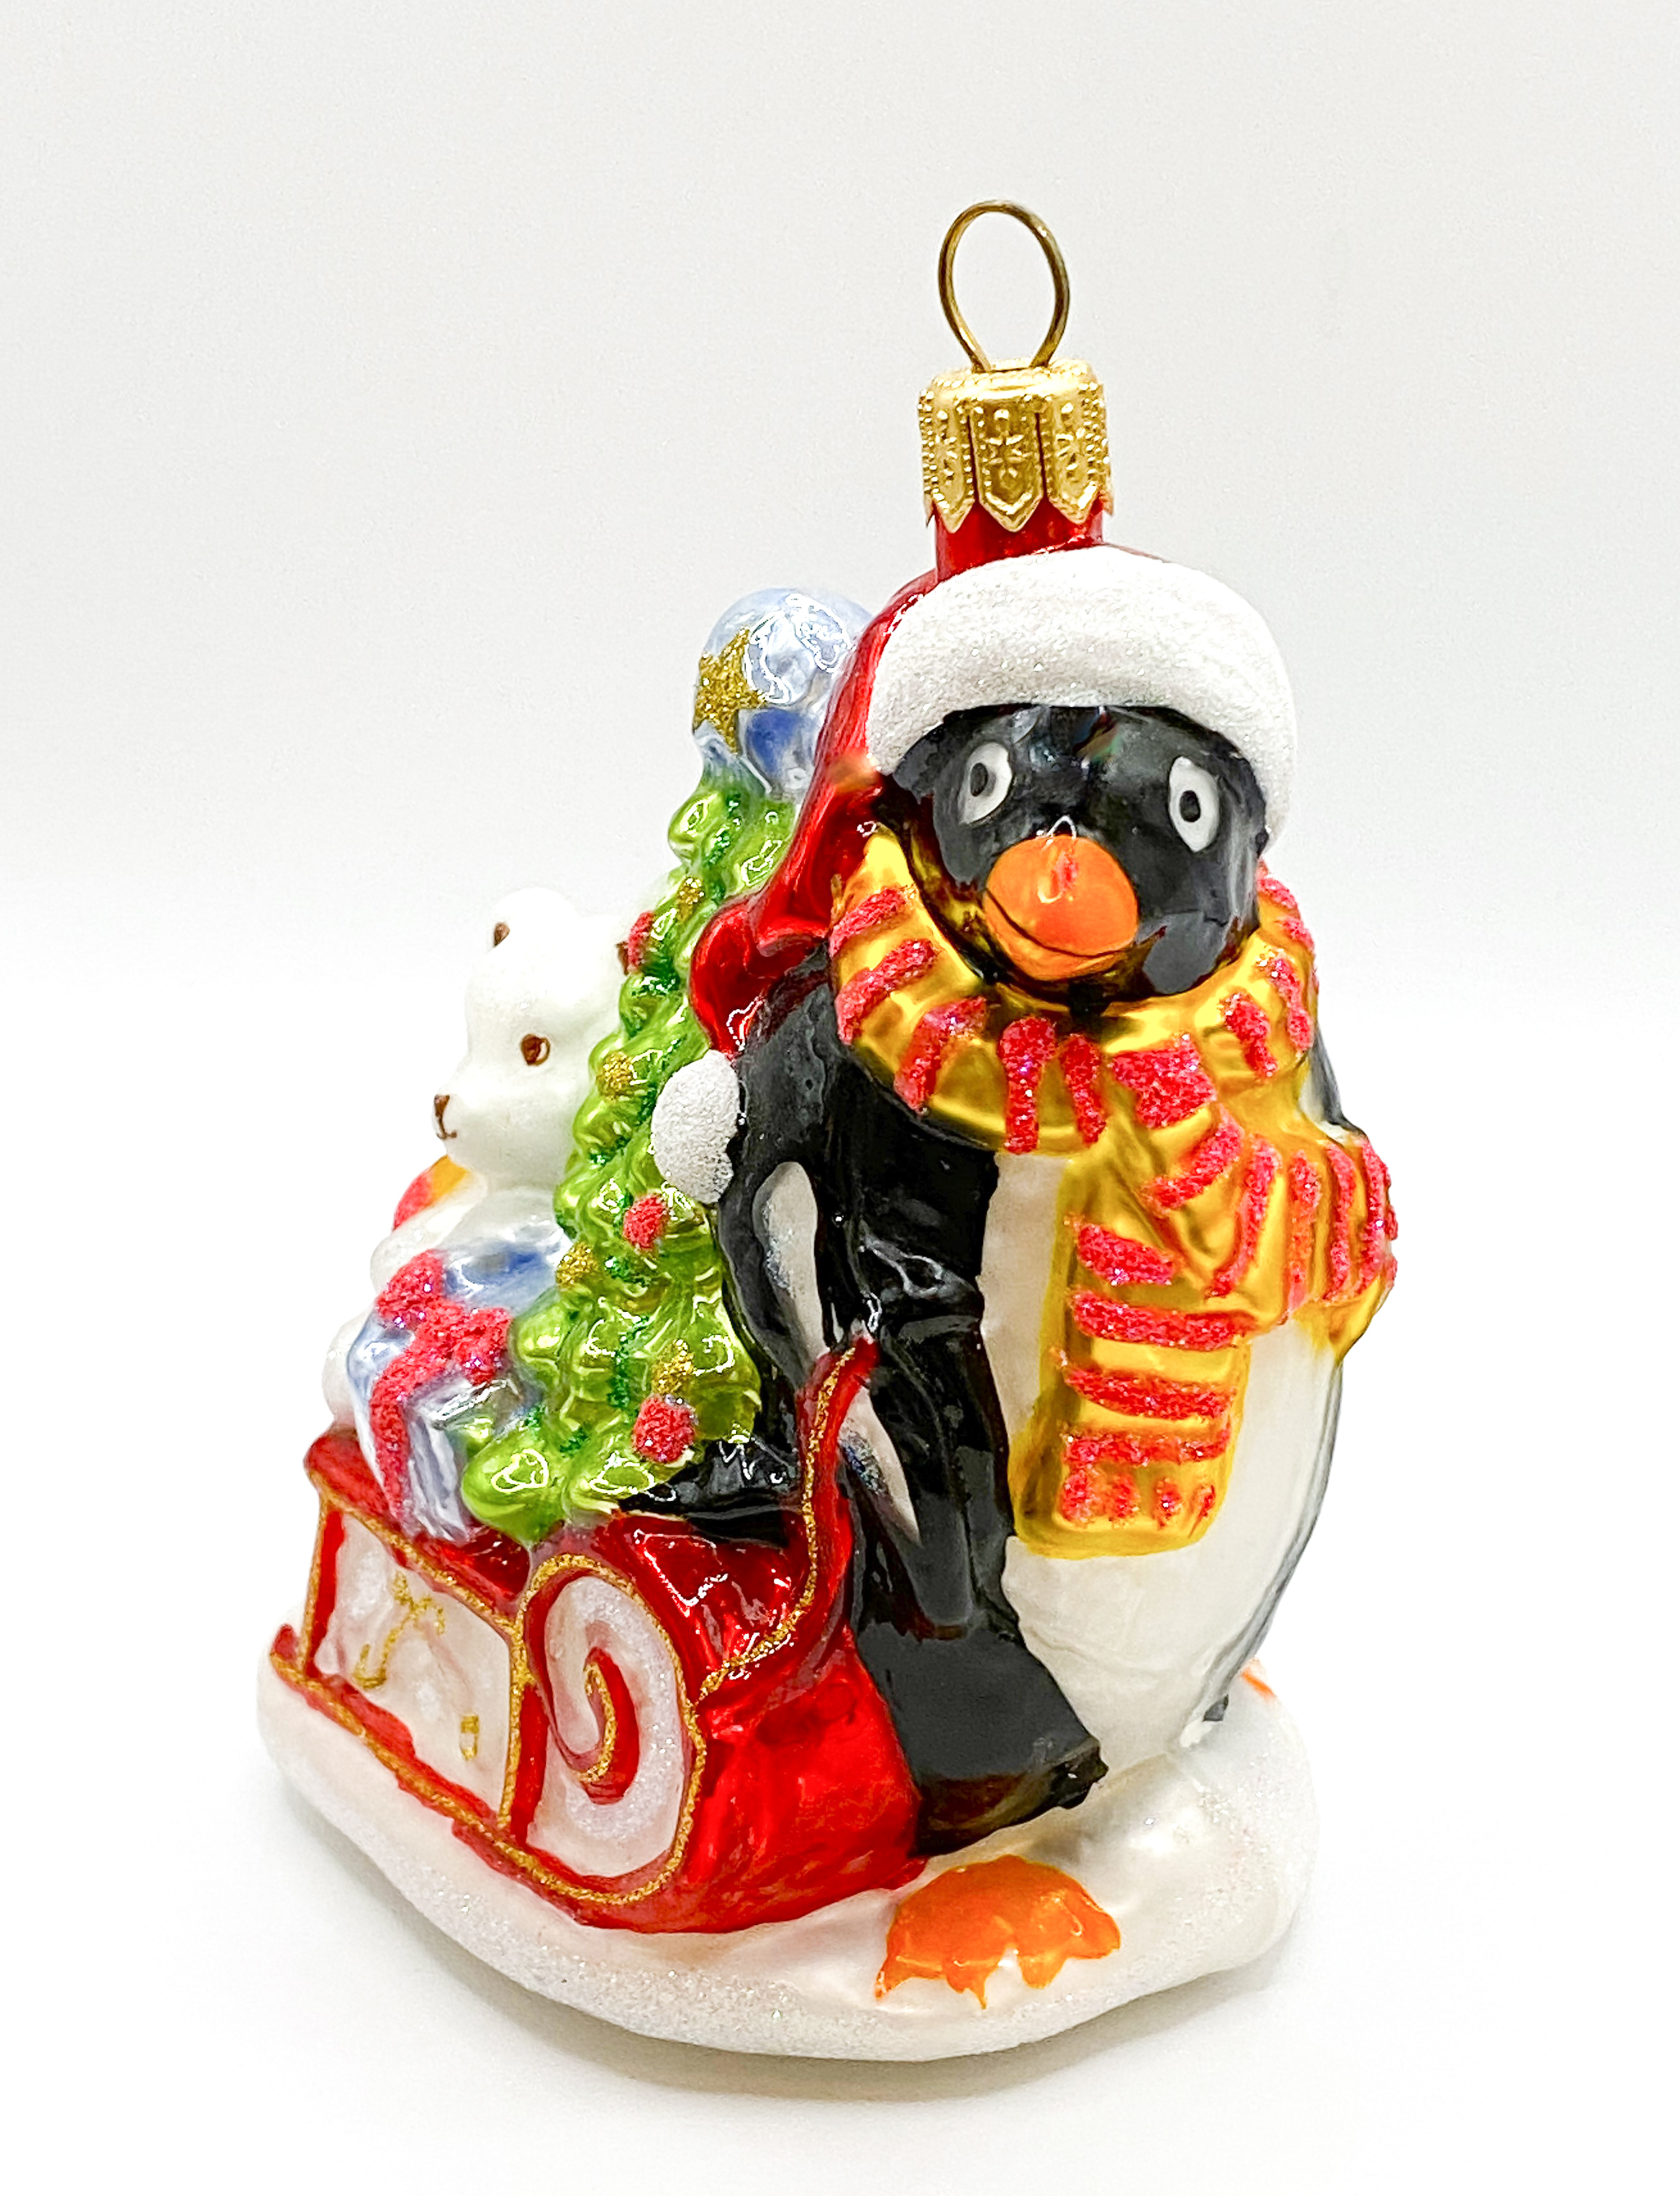 Pinguin-geschenk vom weihnachtsmann